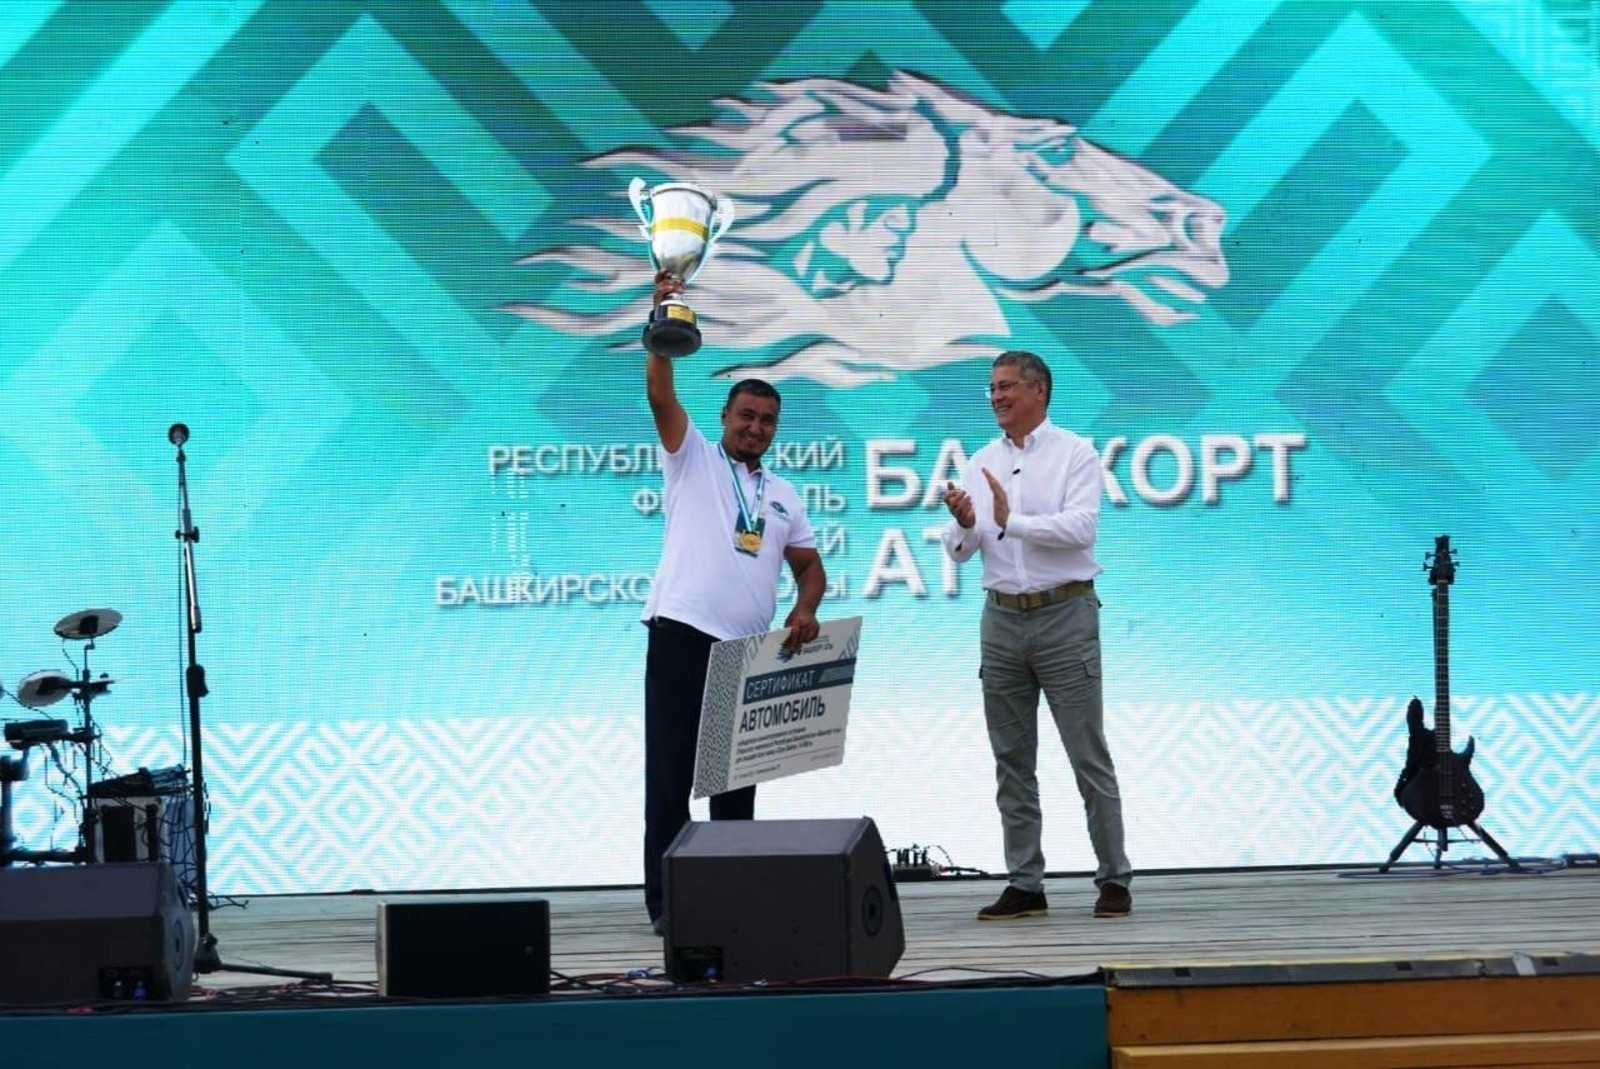 Алмас Шугуров, заводчик из Баймакского района, стал  победителем в конноспортивных соревнованиях «Озон бэйге»